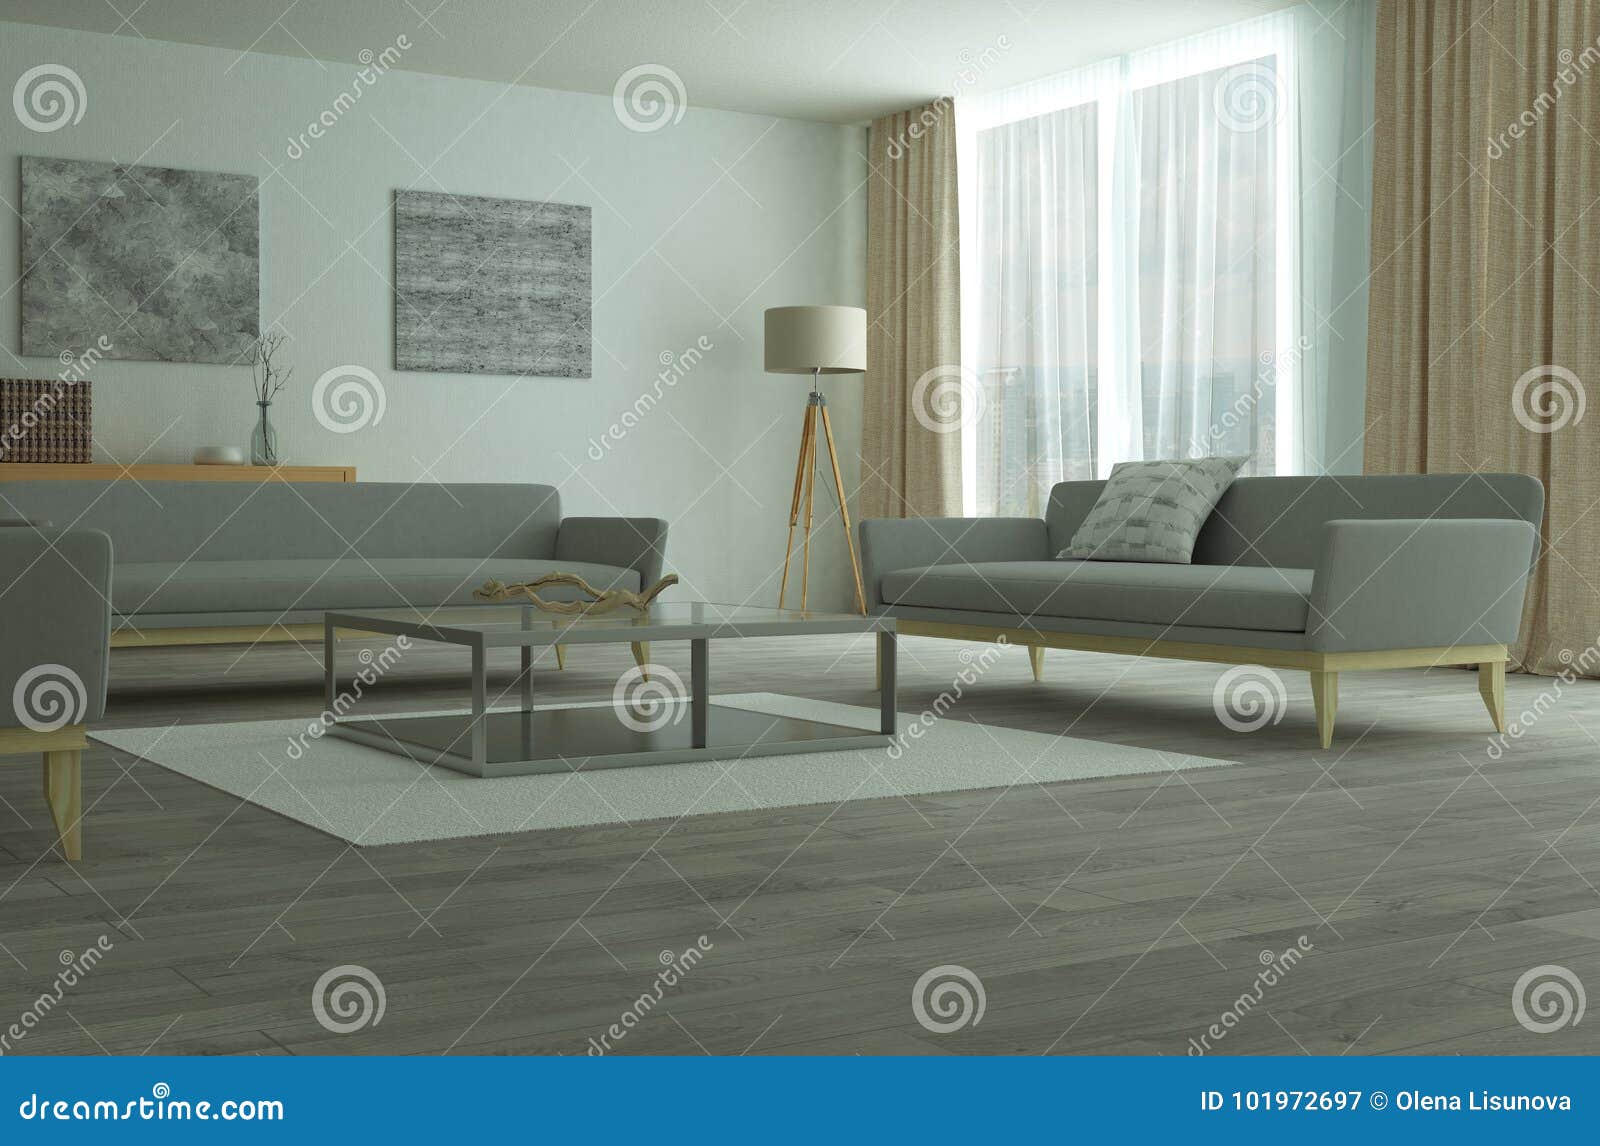 现代宽敞休息室或客厅内部. 三个沙发在有硬木地板的宽敞灰色室在未来派内部